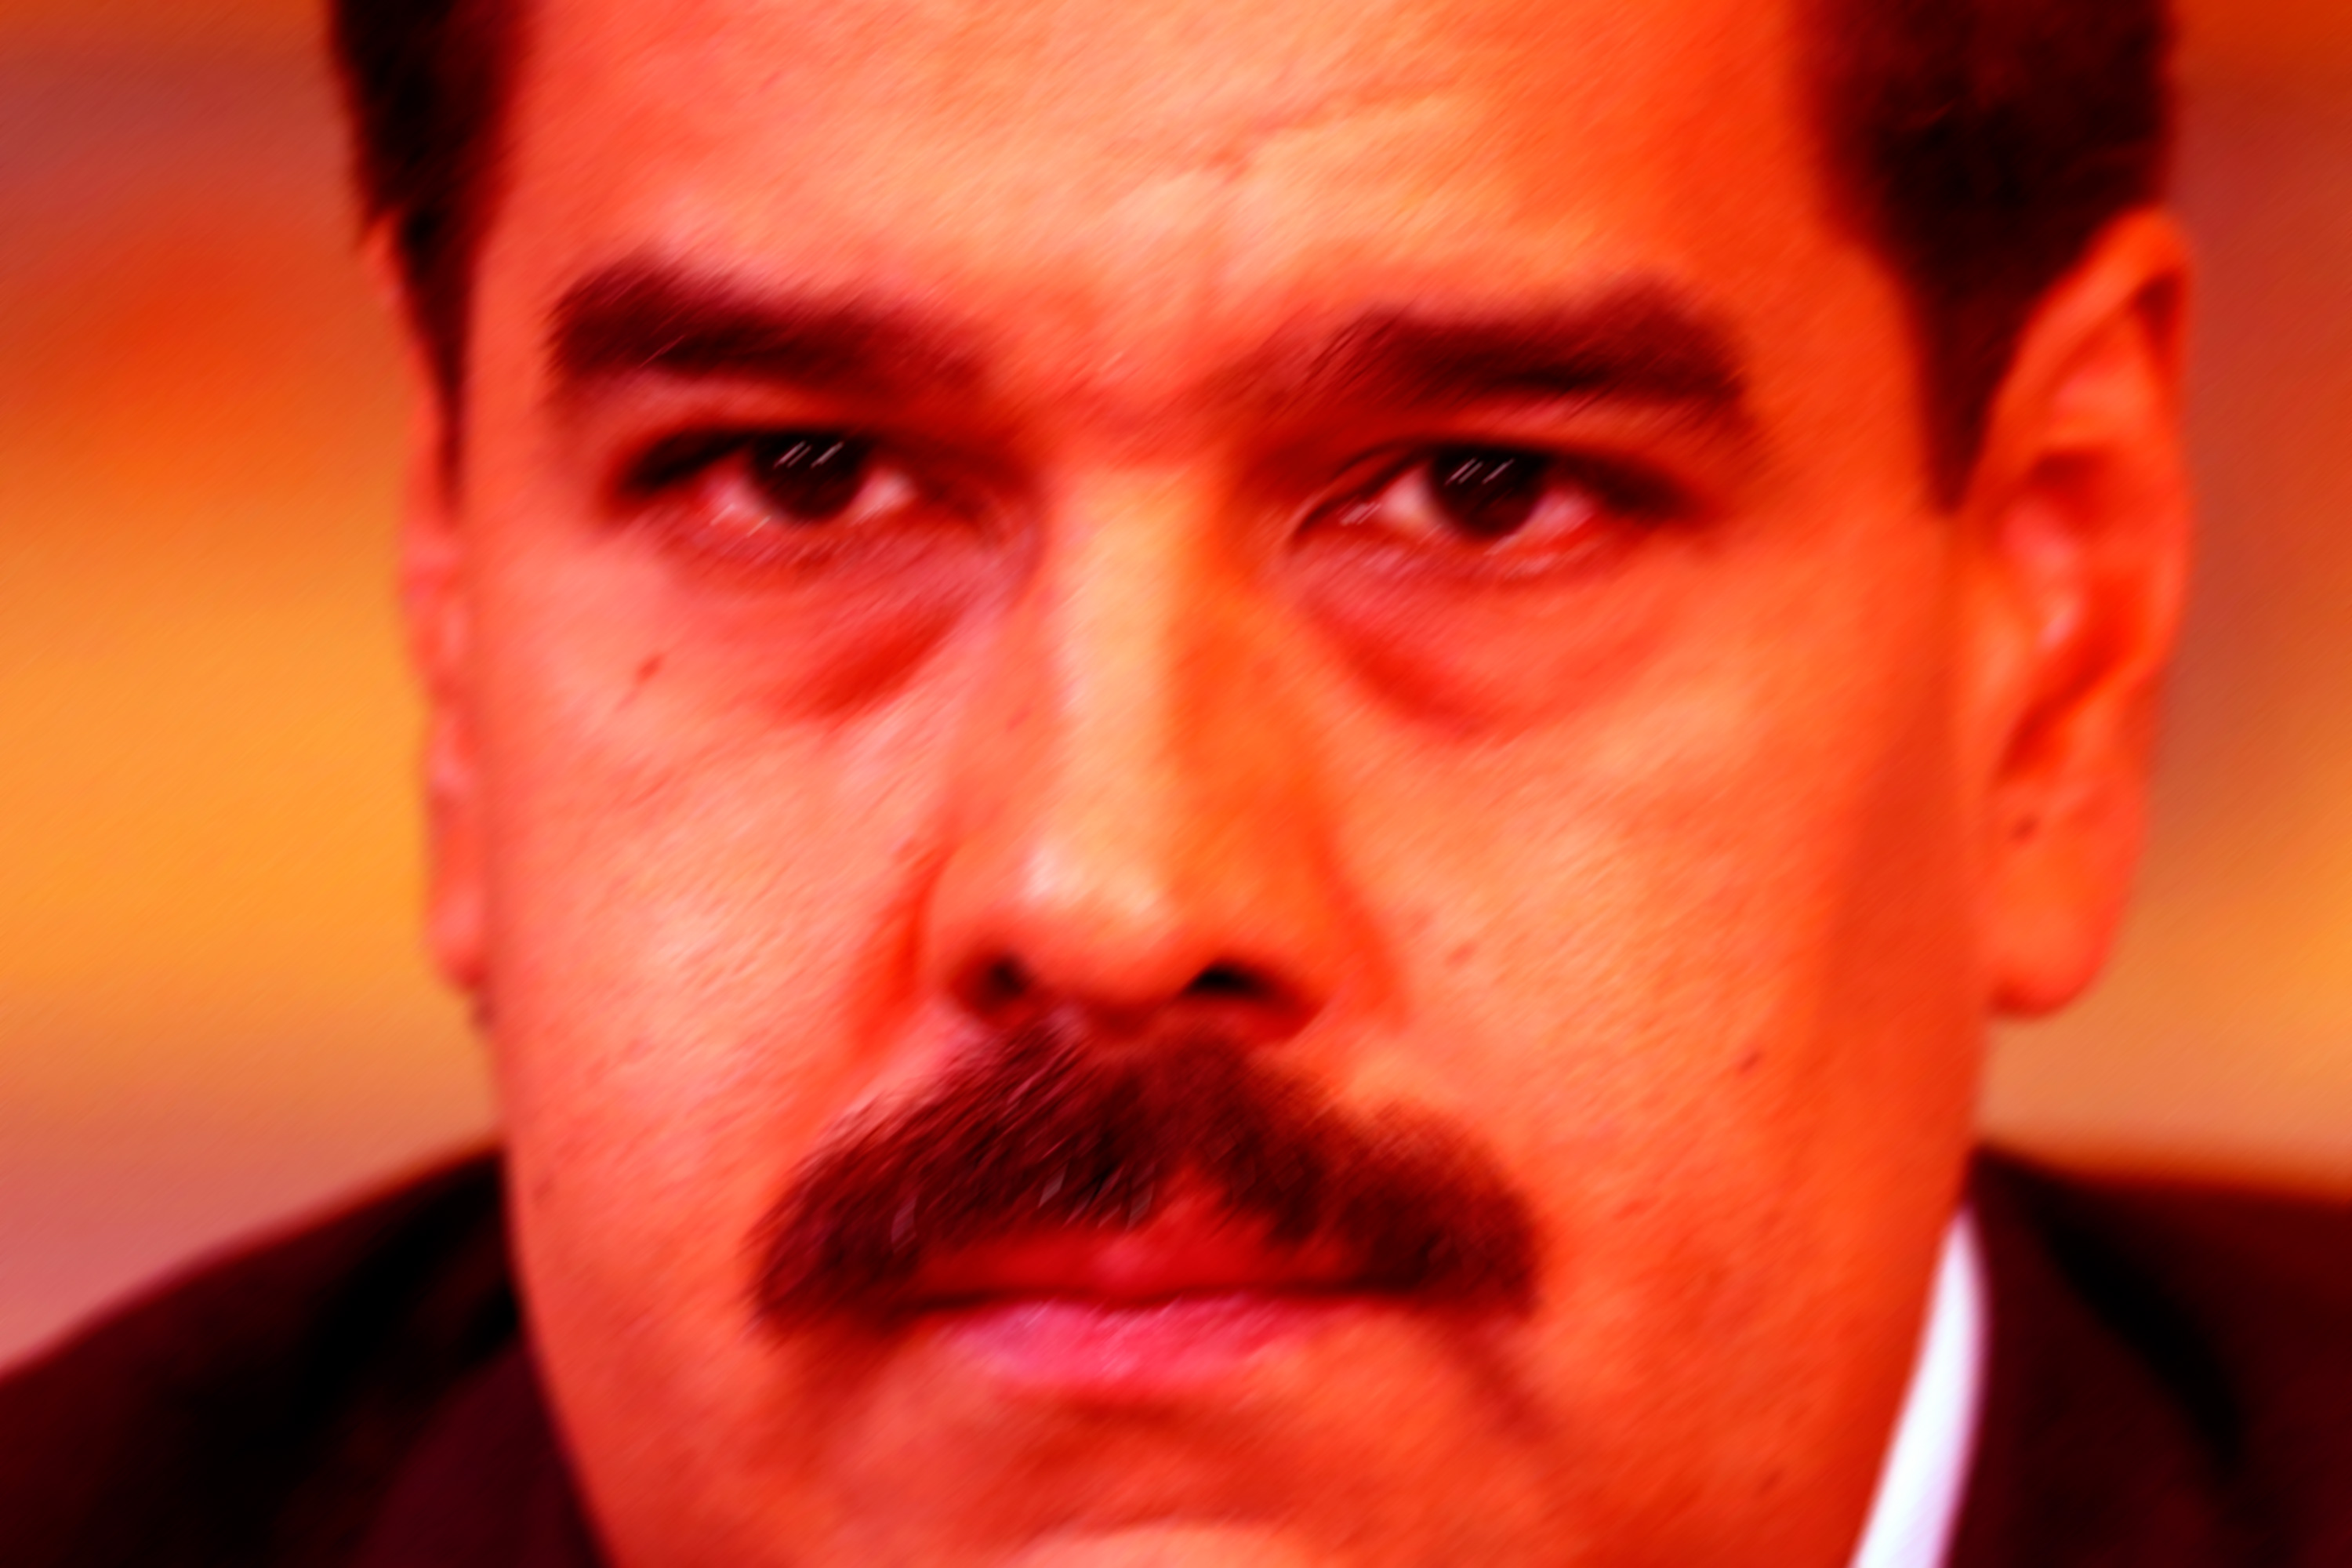 Venezolanos culpan a Maduro por la crisis y creen que se necesita un cambio de gobierno (Encuesta Atlantic Council)